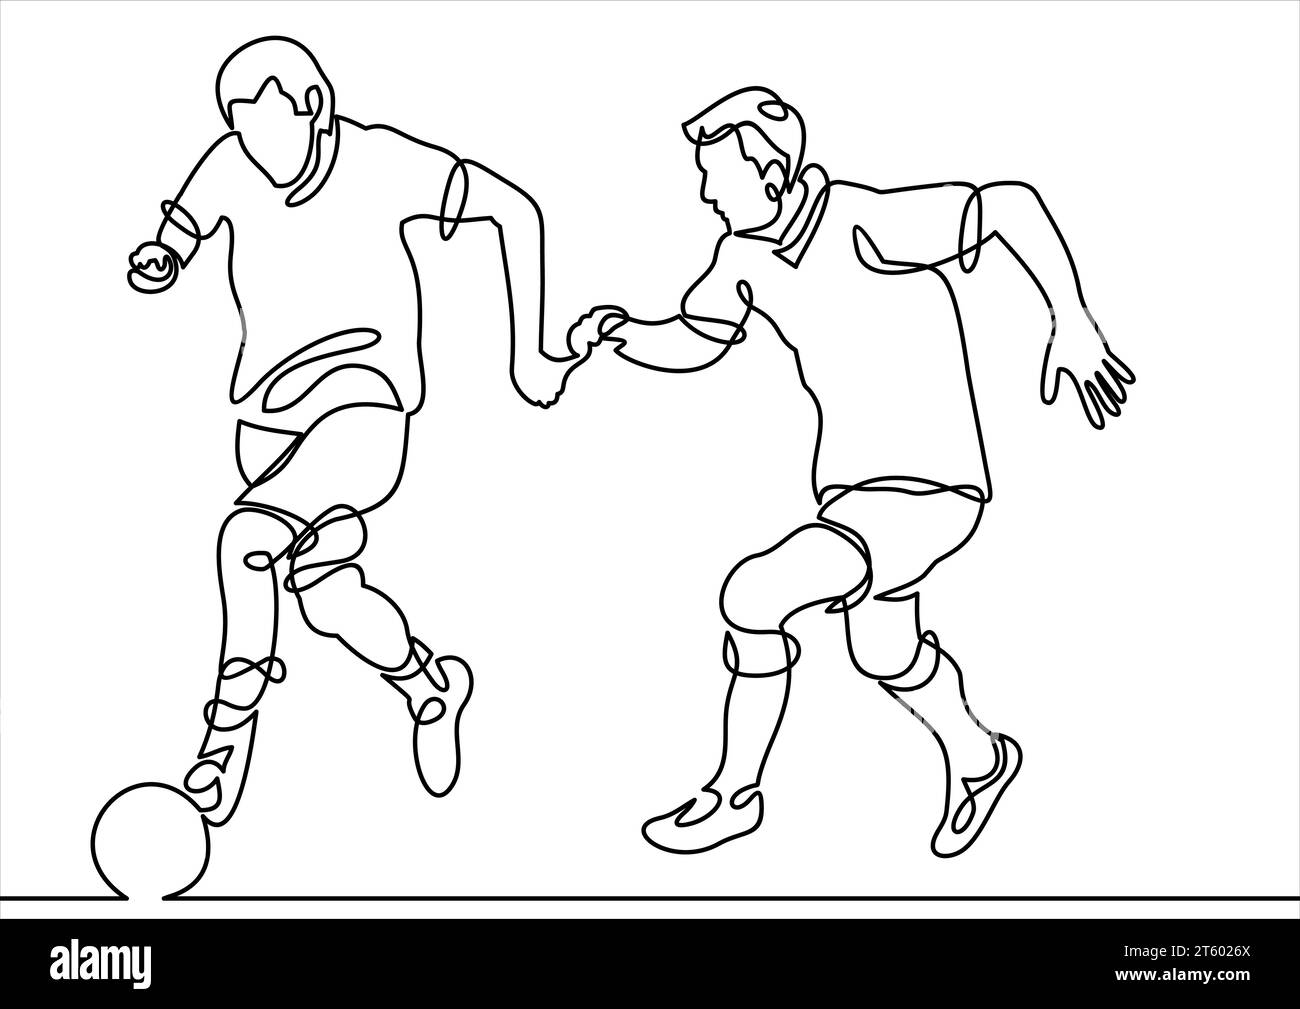 Durchgehende Linienzeichnung oder eine Linienzeichnung von zwei Fußballspielern, die nach dem Ball suchen Stock Vektor